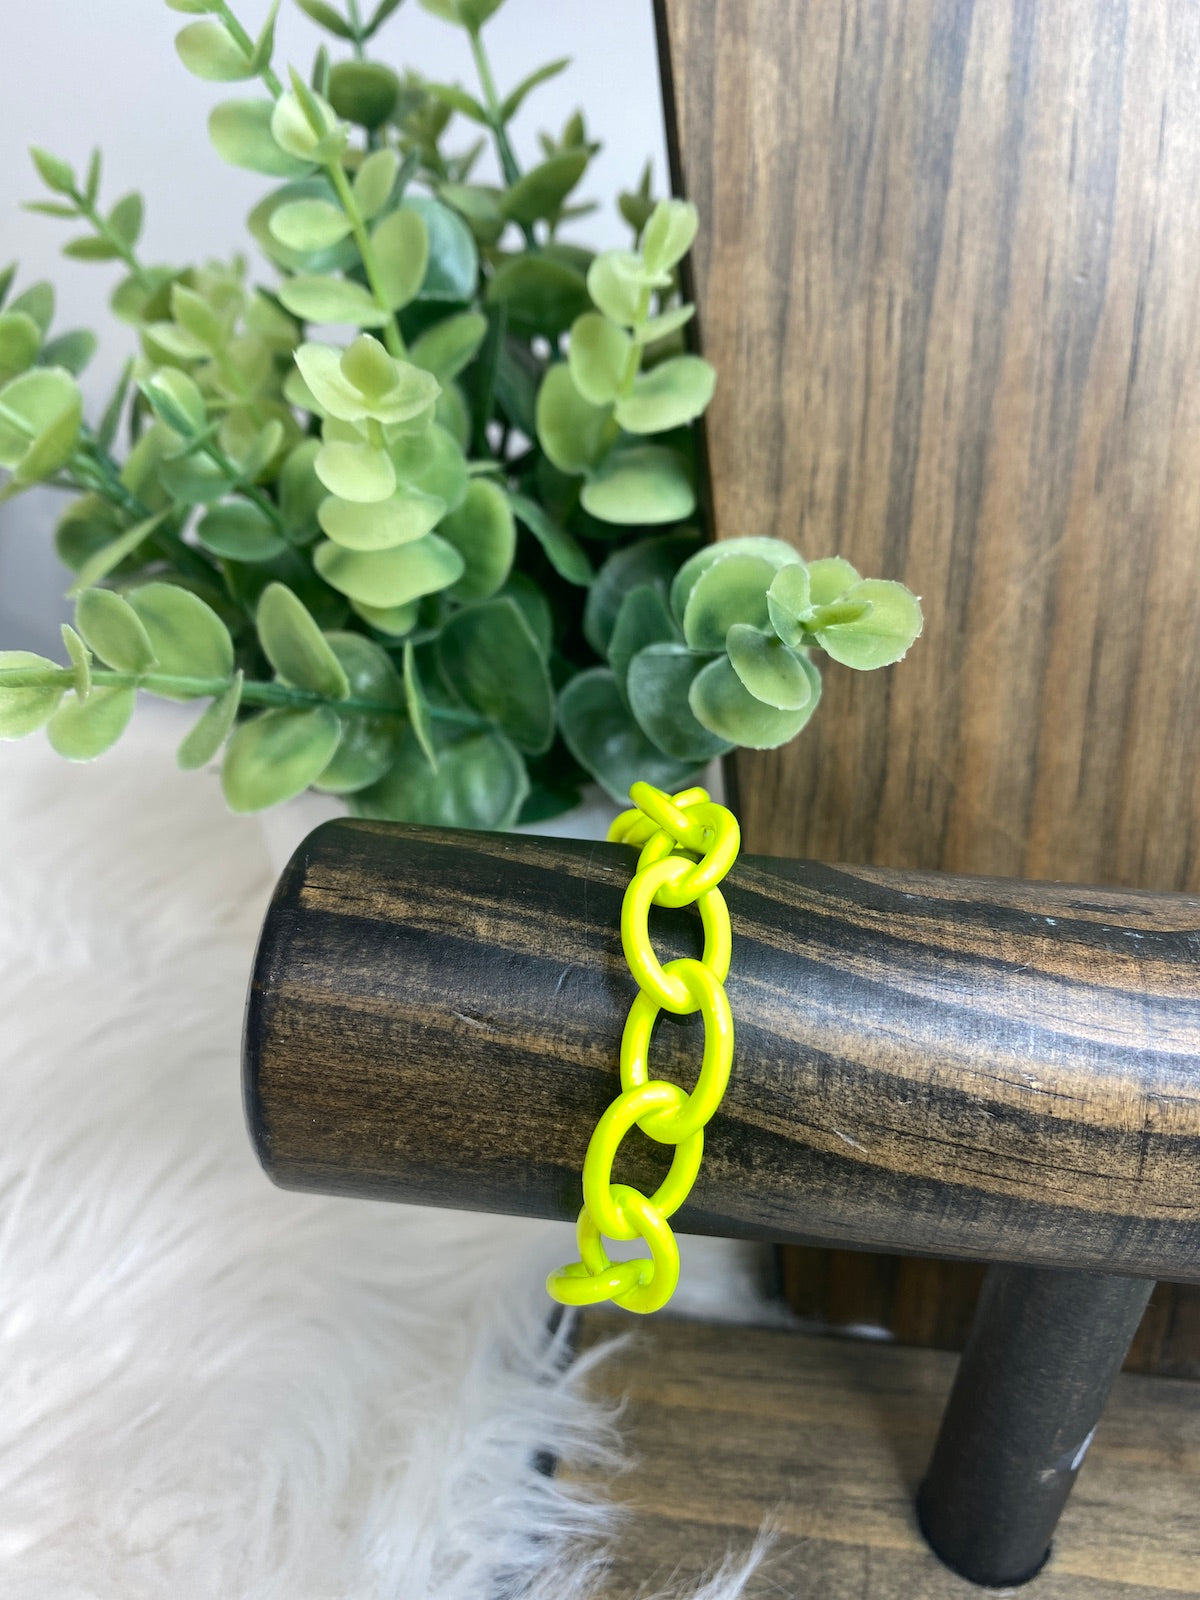 Jasmine - Enamel Plated Over Brass Adjustable Oval Chain Link Cuff Bracelet - Choose Color